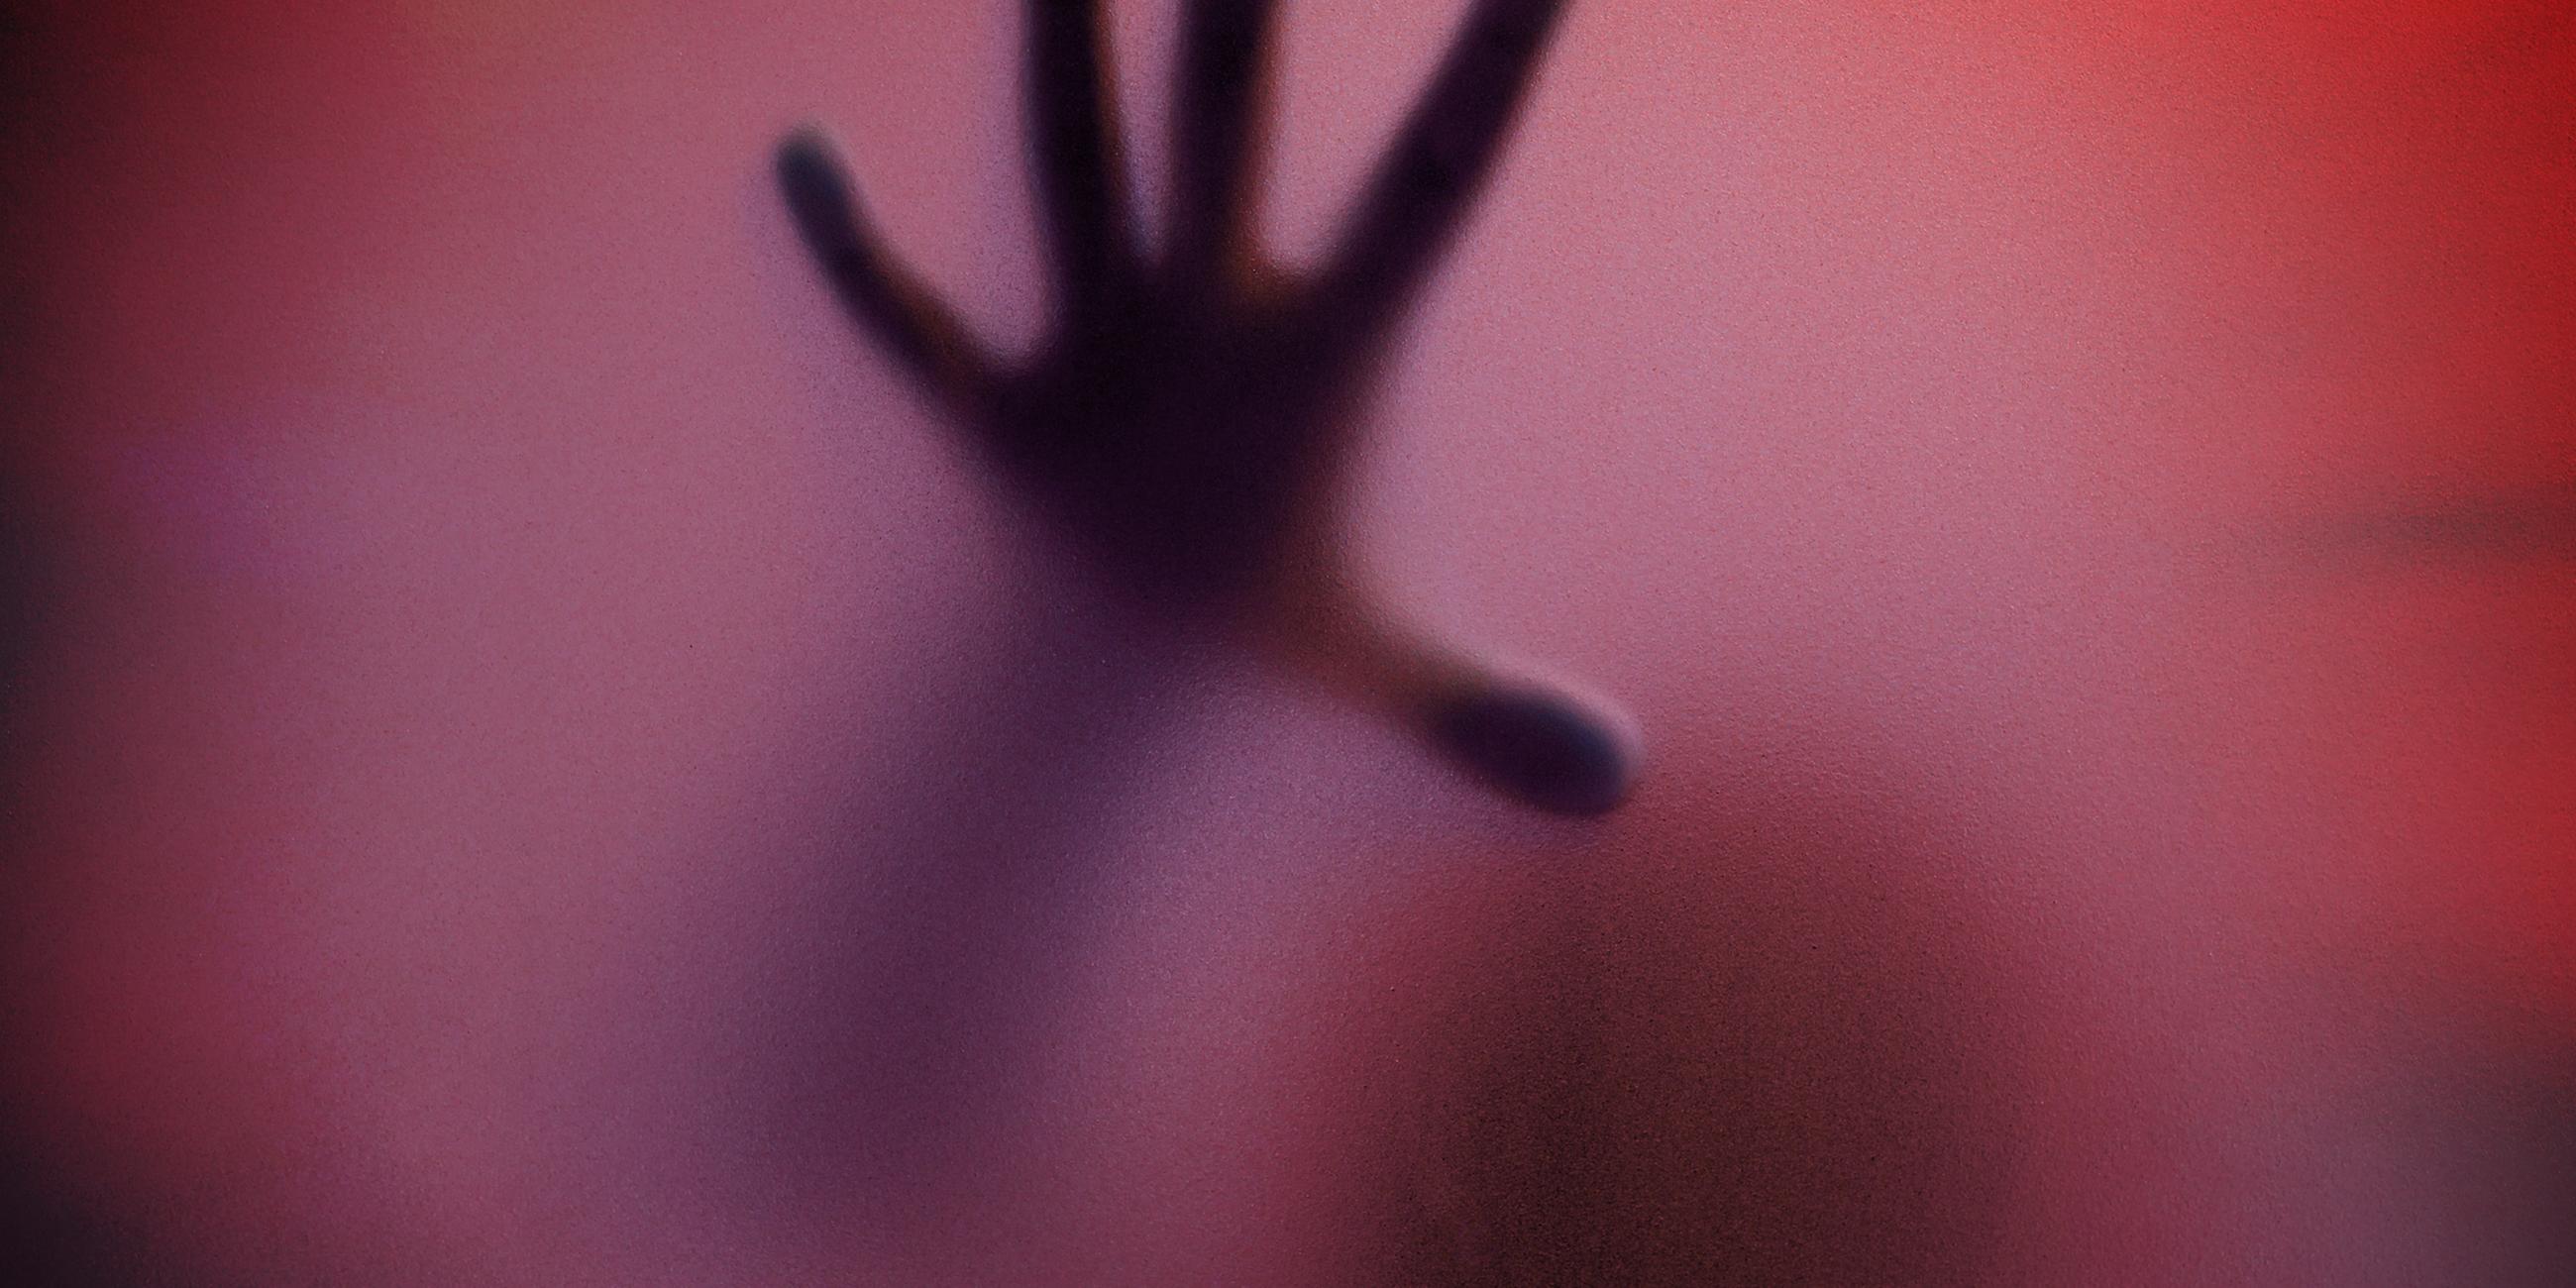 Schatten eines Menschen durch eine matte Glasscheibe in Rottöne getaucht